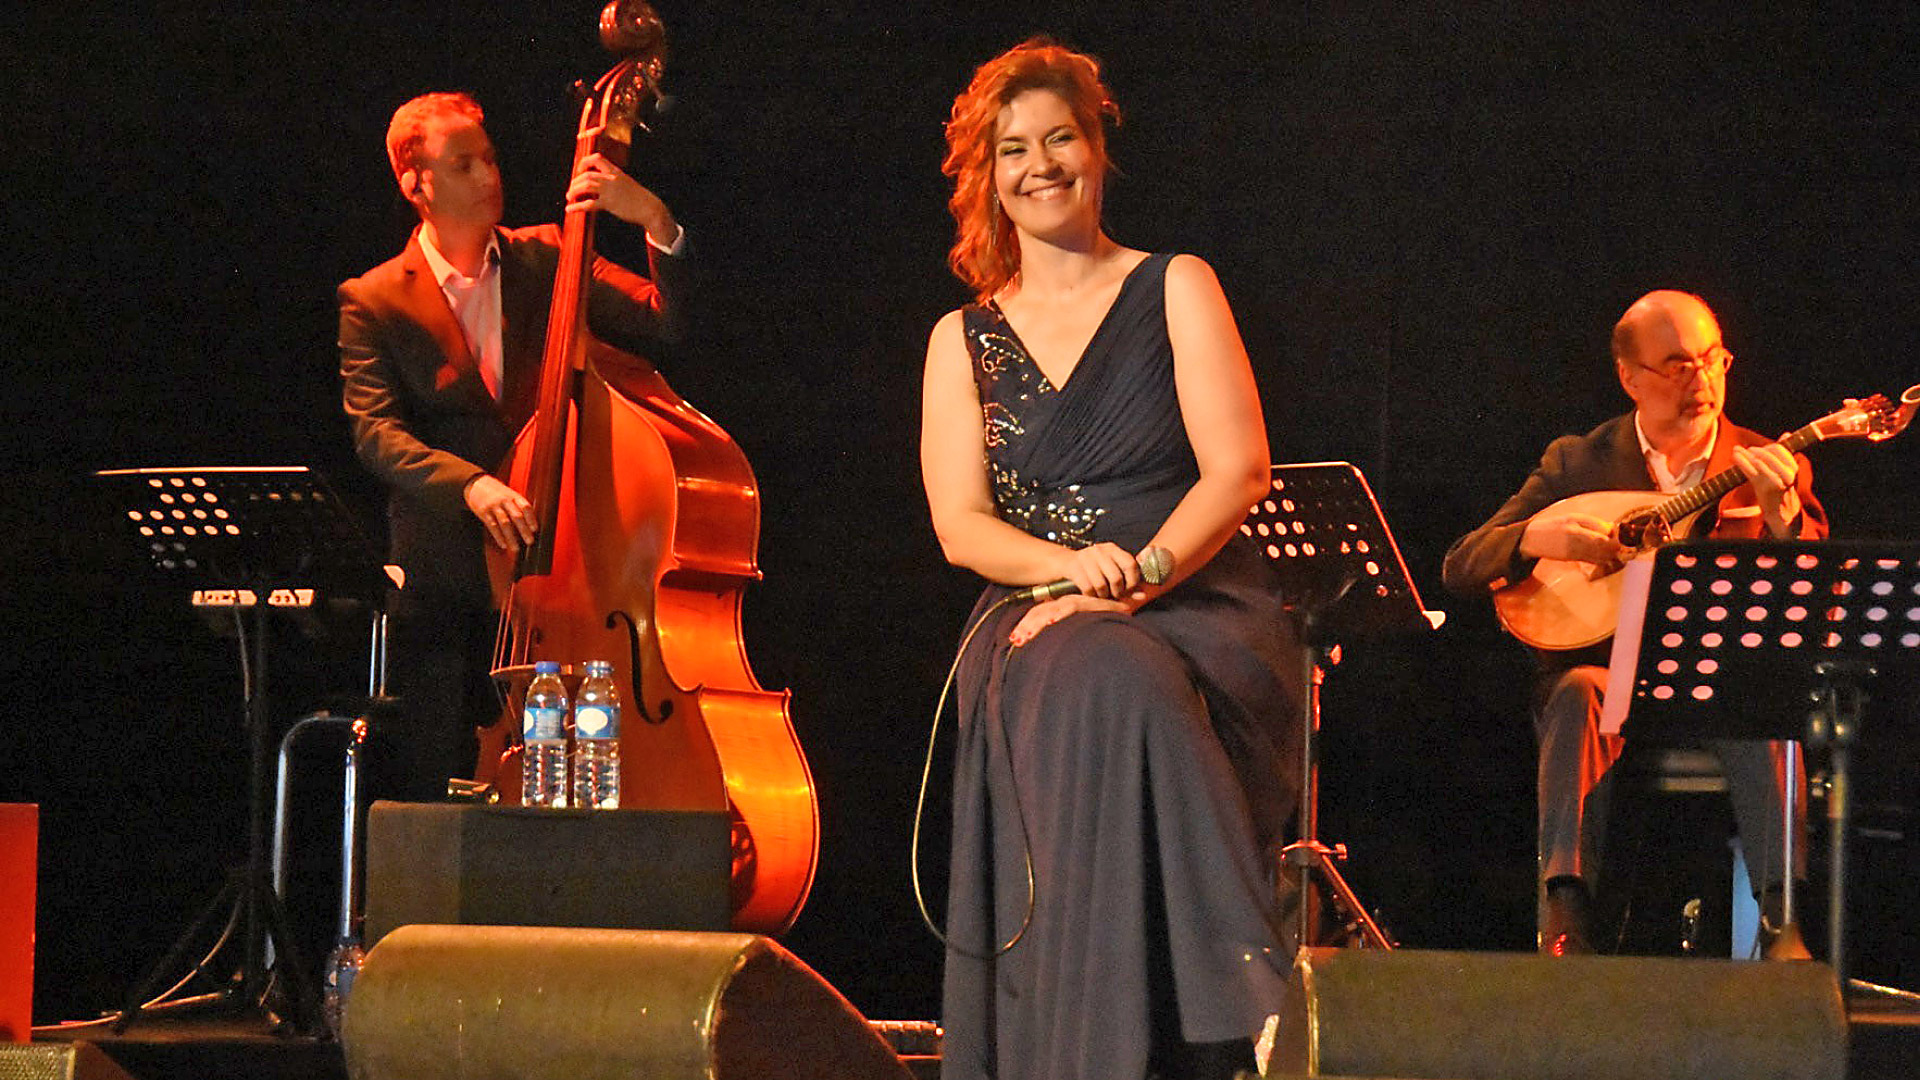 Jaqueline Carvalho apresentou “Meu Fado”, no Lounge D no Casino Estoril